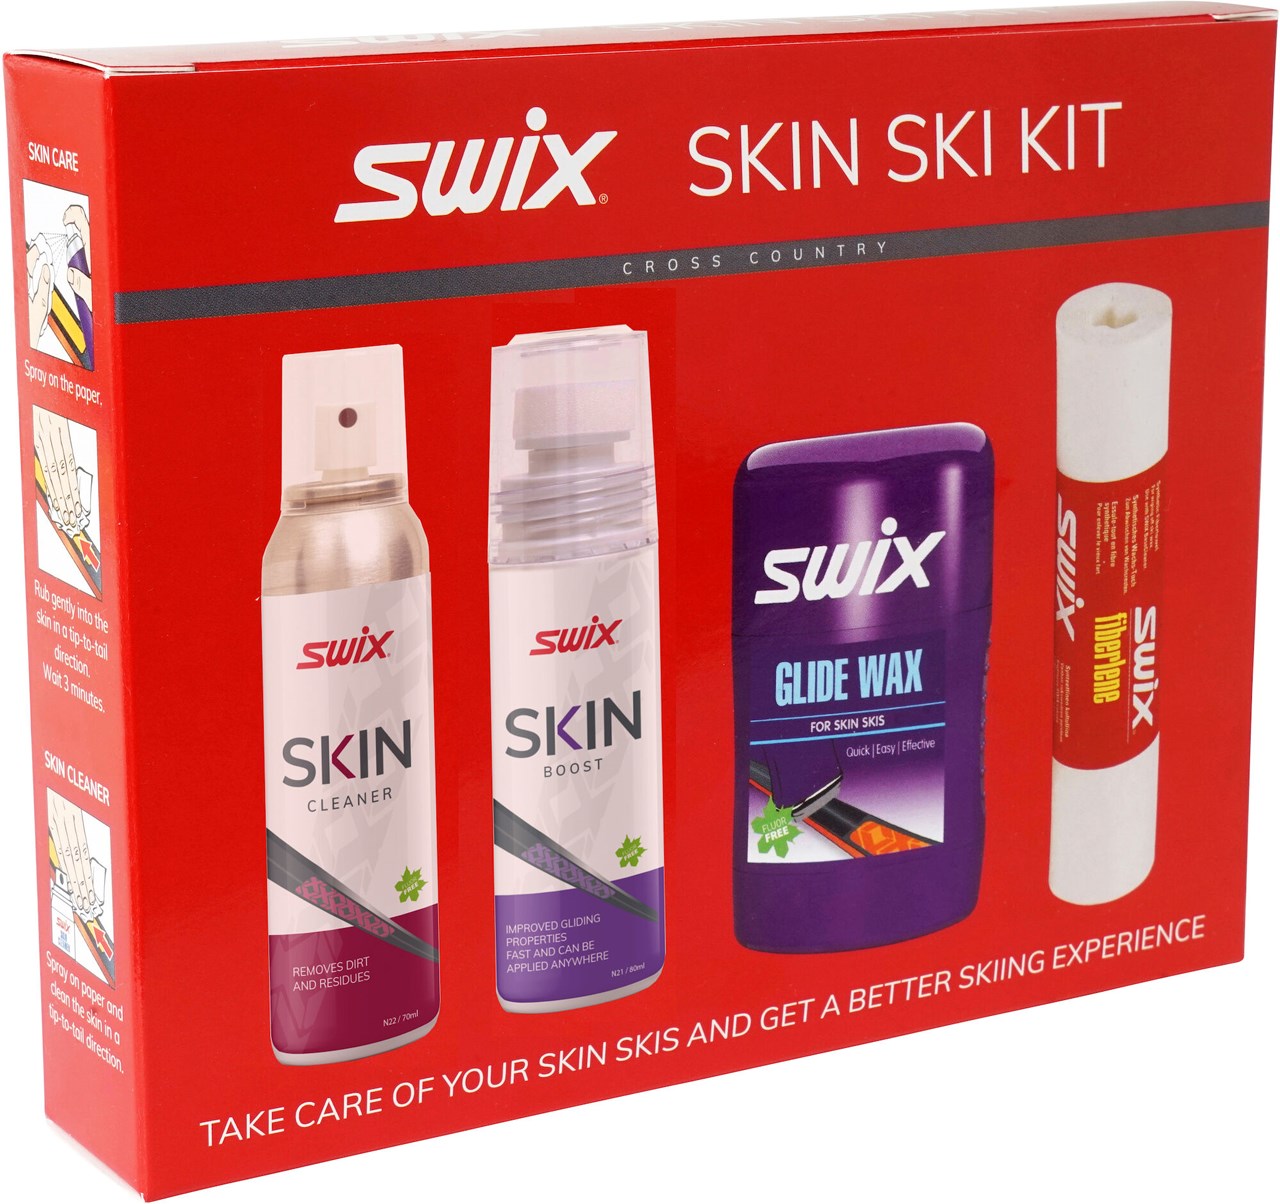 Swix skin ski kit